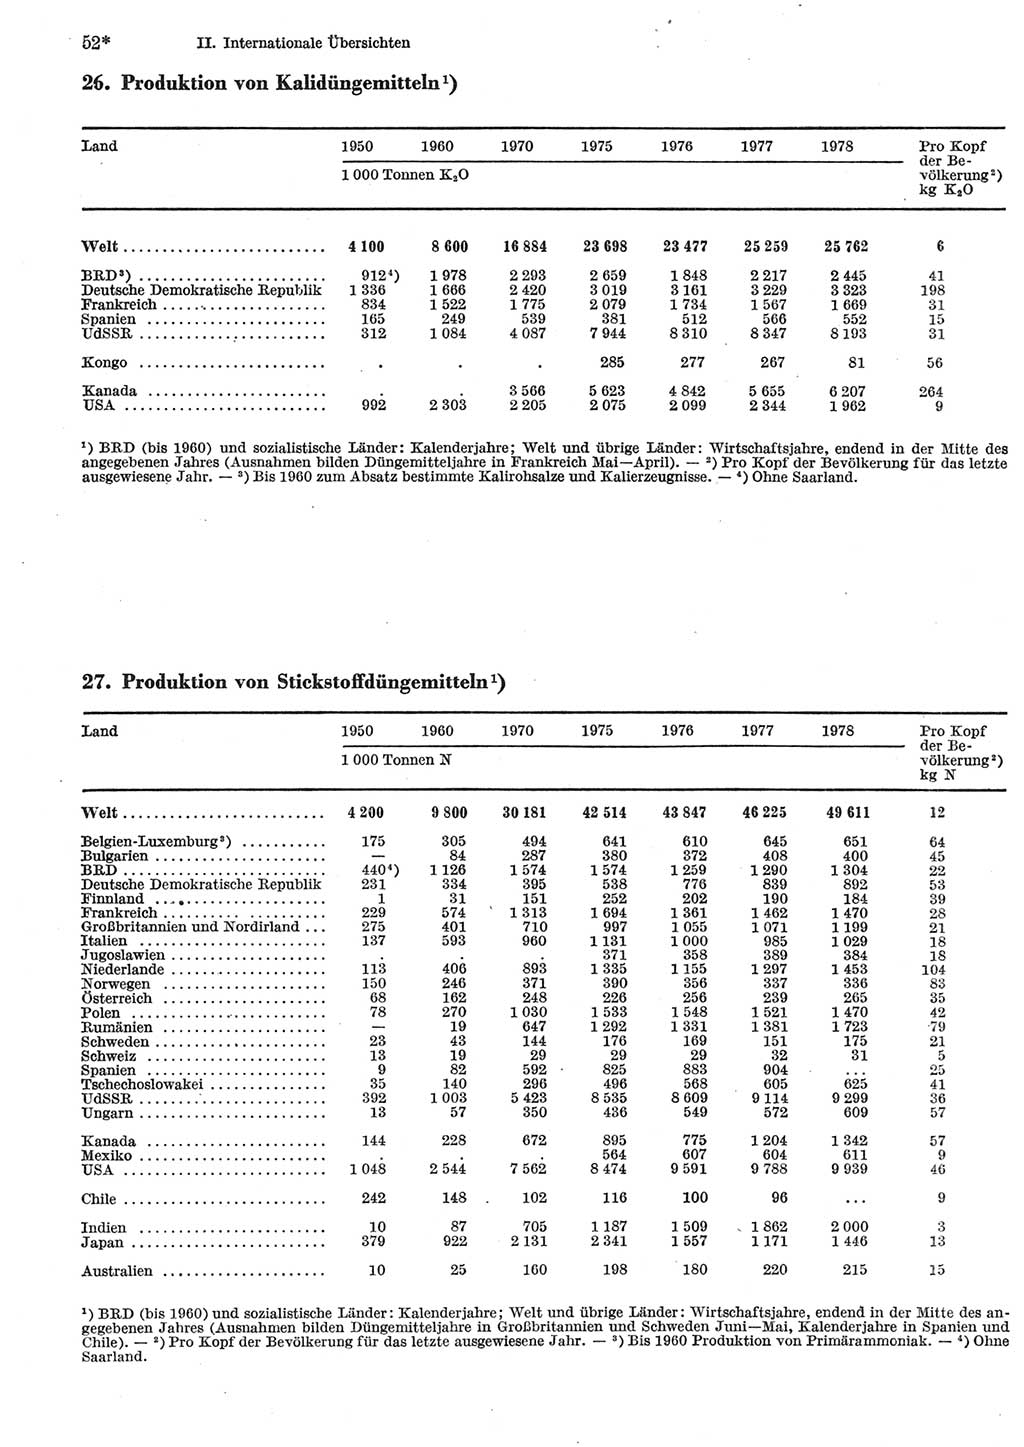 Statistisches Jahrbuch der Deutschen Demokratischen Republik (DDR) 1980, Seite 52 (Stat. Jb. DDR 1980, S. 52)